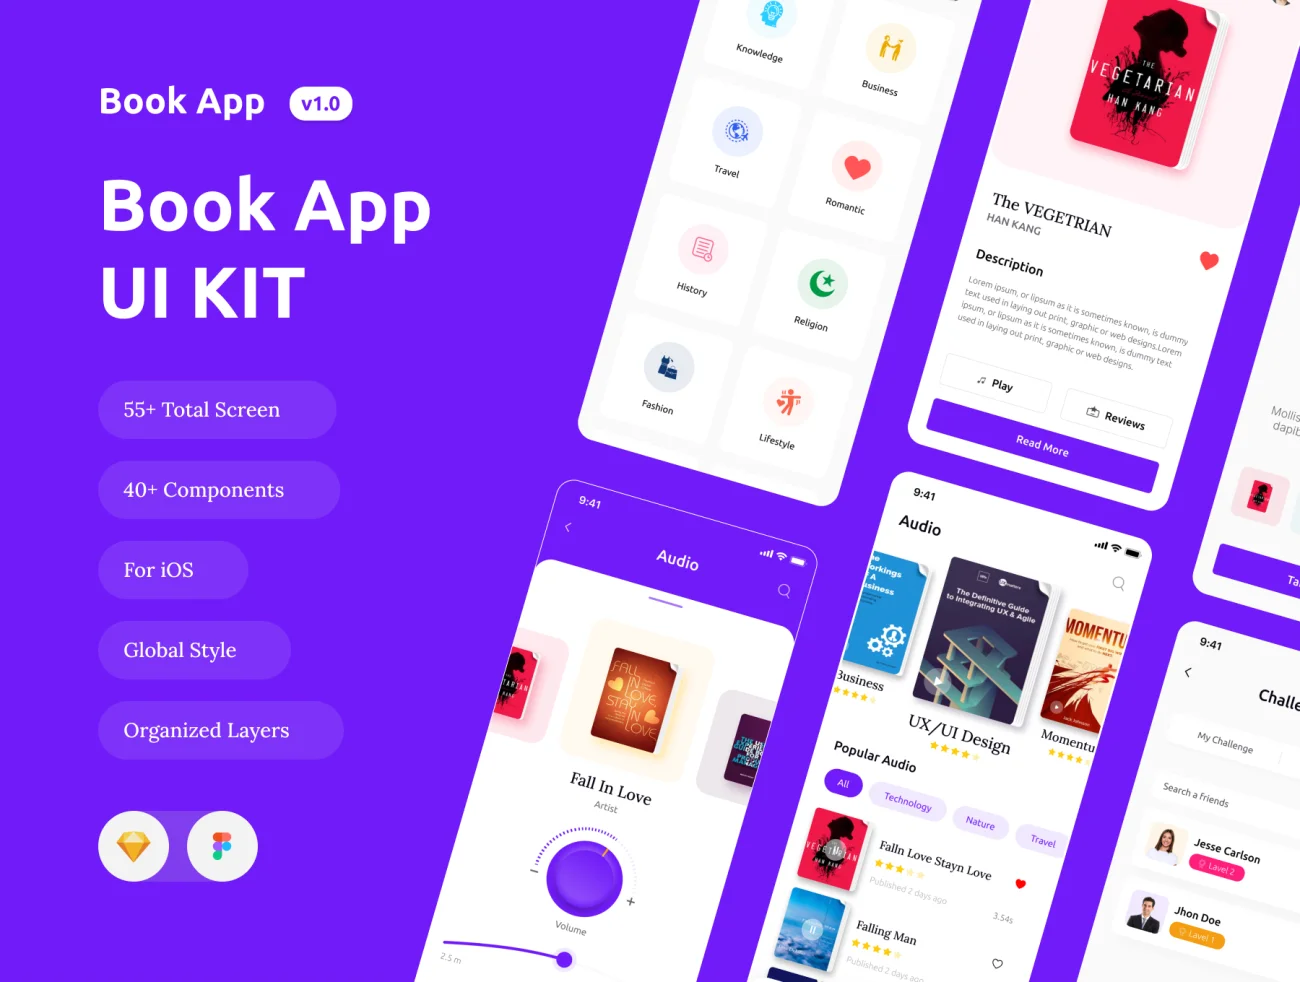 Book App iOS App UI Help Kit 55屏书籍阅读应用设计套件-UI/UX、ui套件、列表、卡片式、图表、应用、日历、表单-到位啦UI